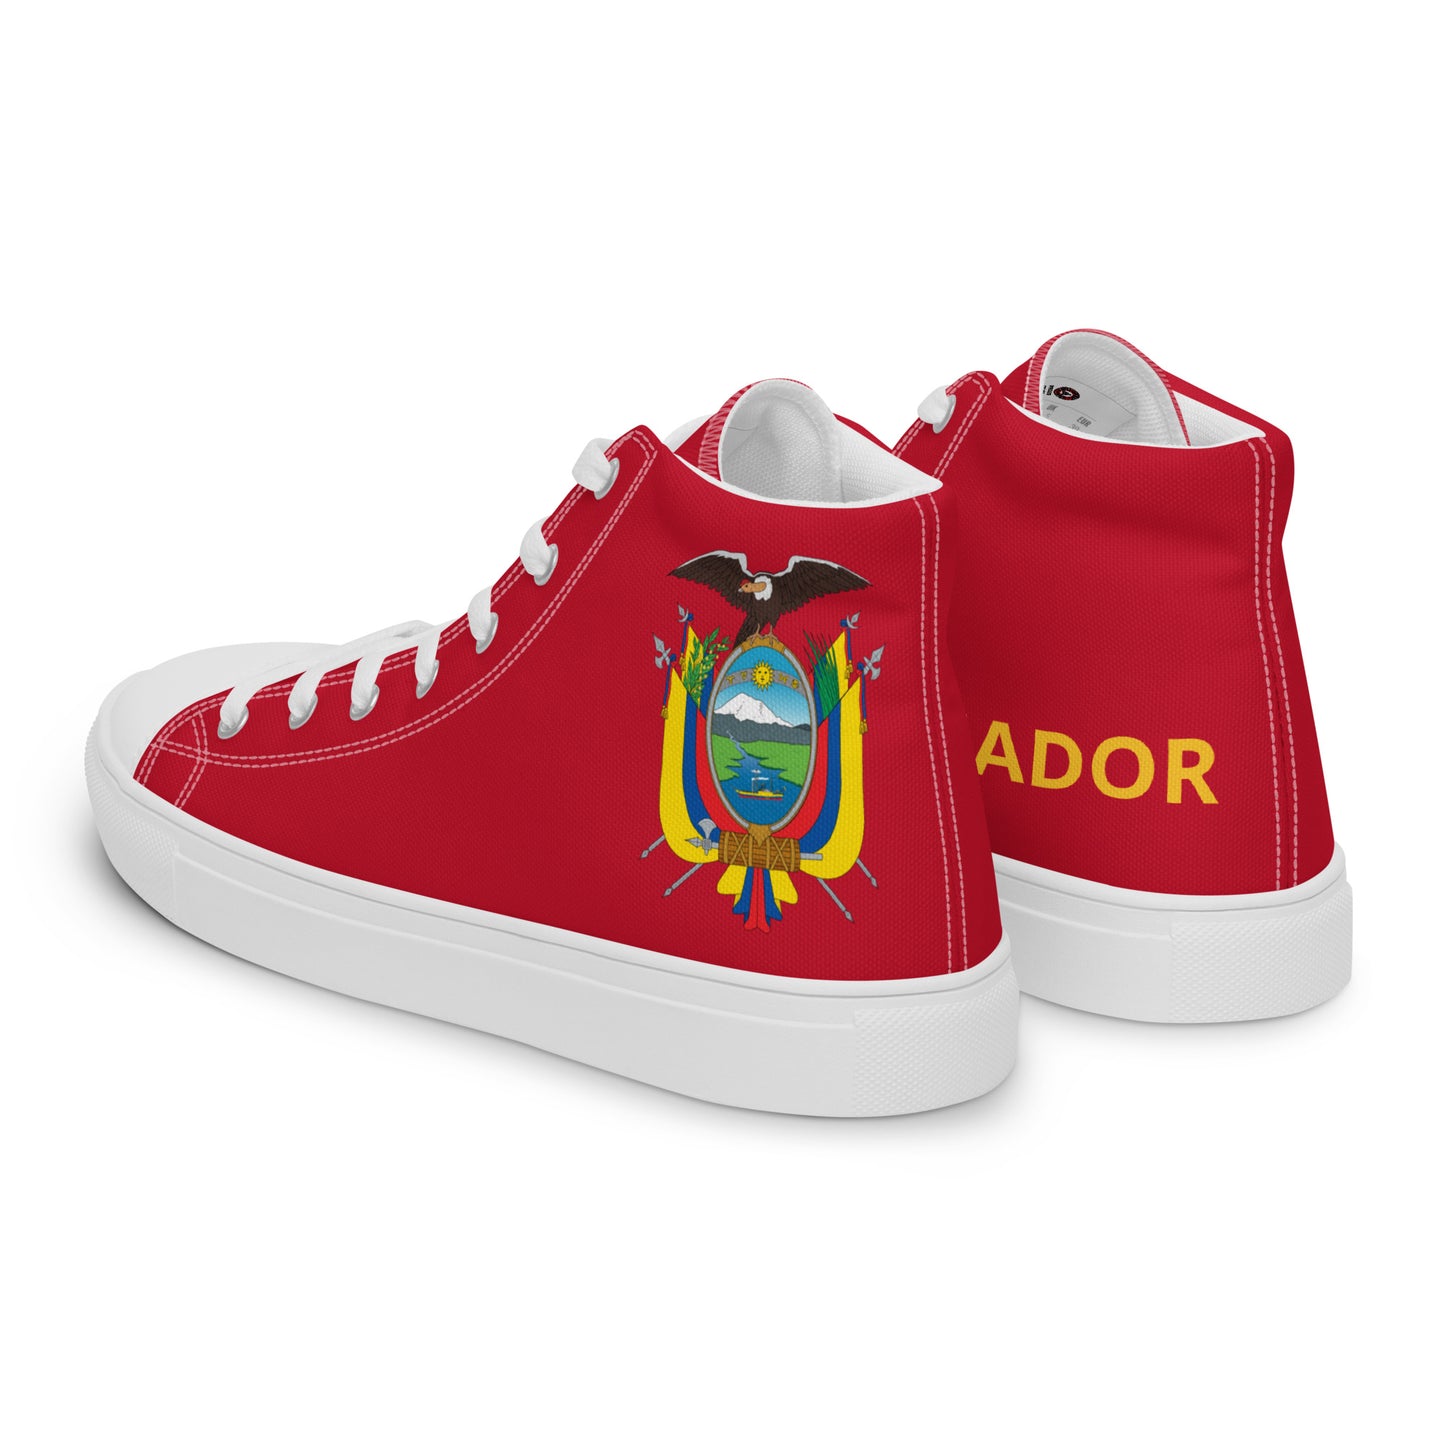 Ecuador - Women - Red - High top shoes